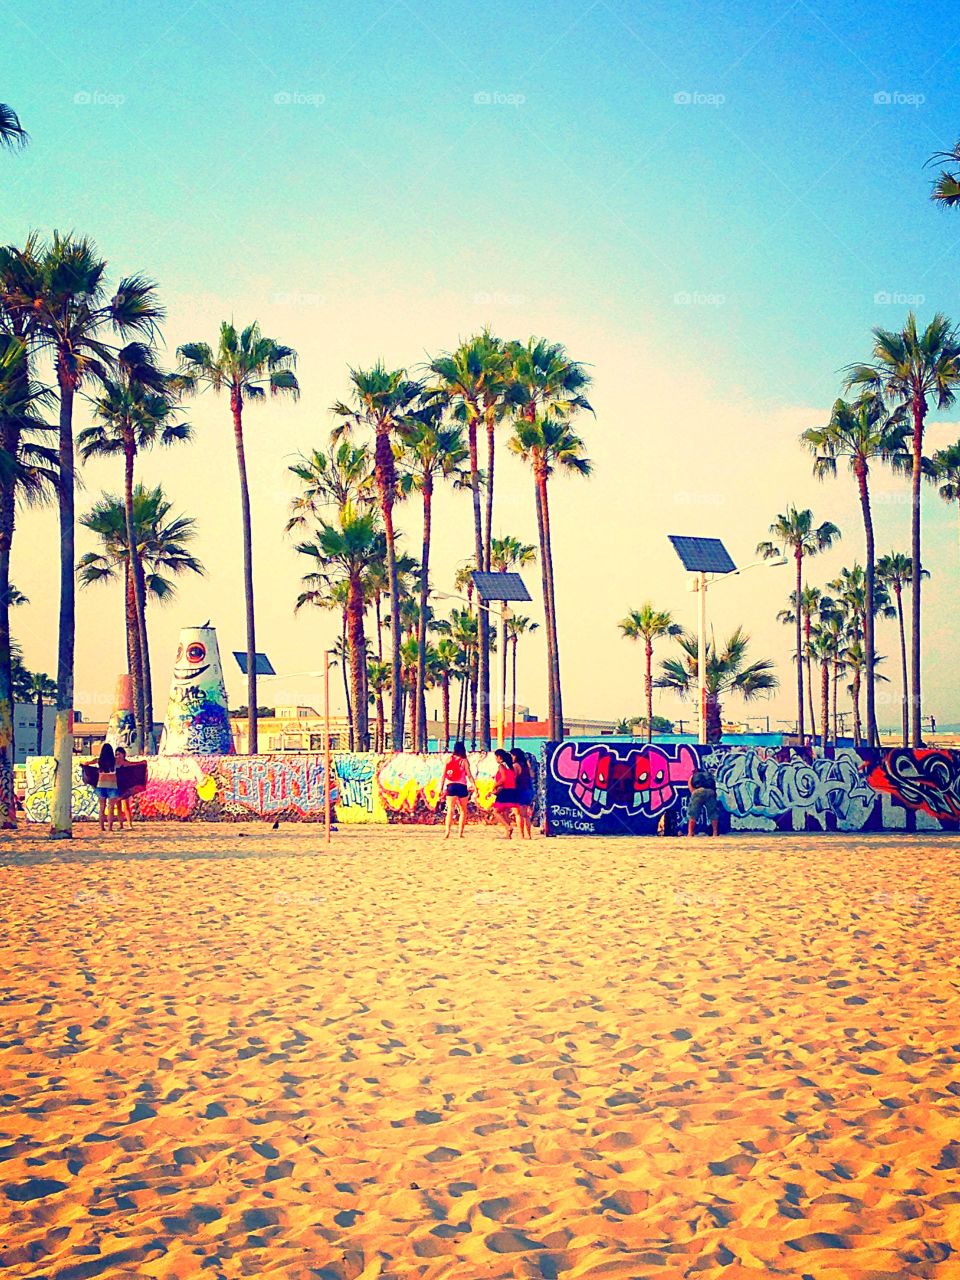 Venice Beach, California graffiti 